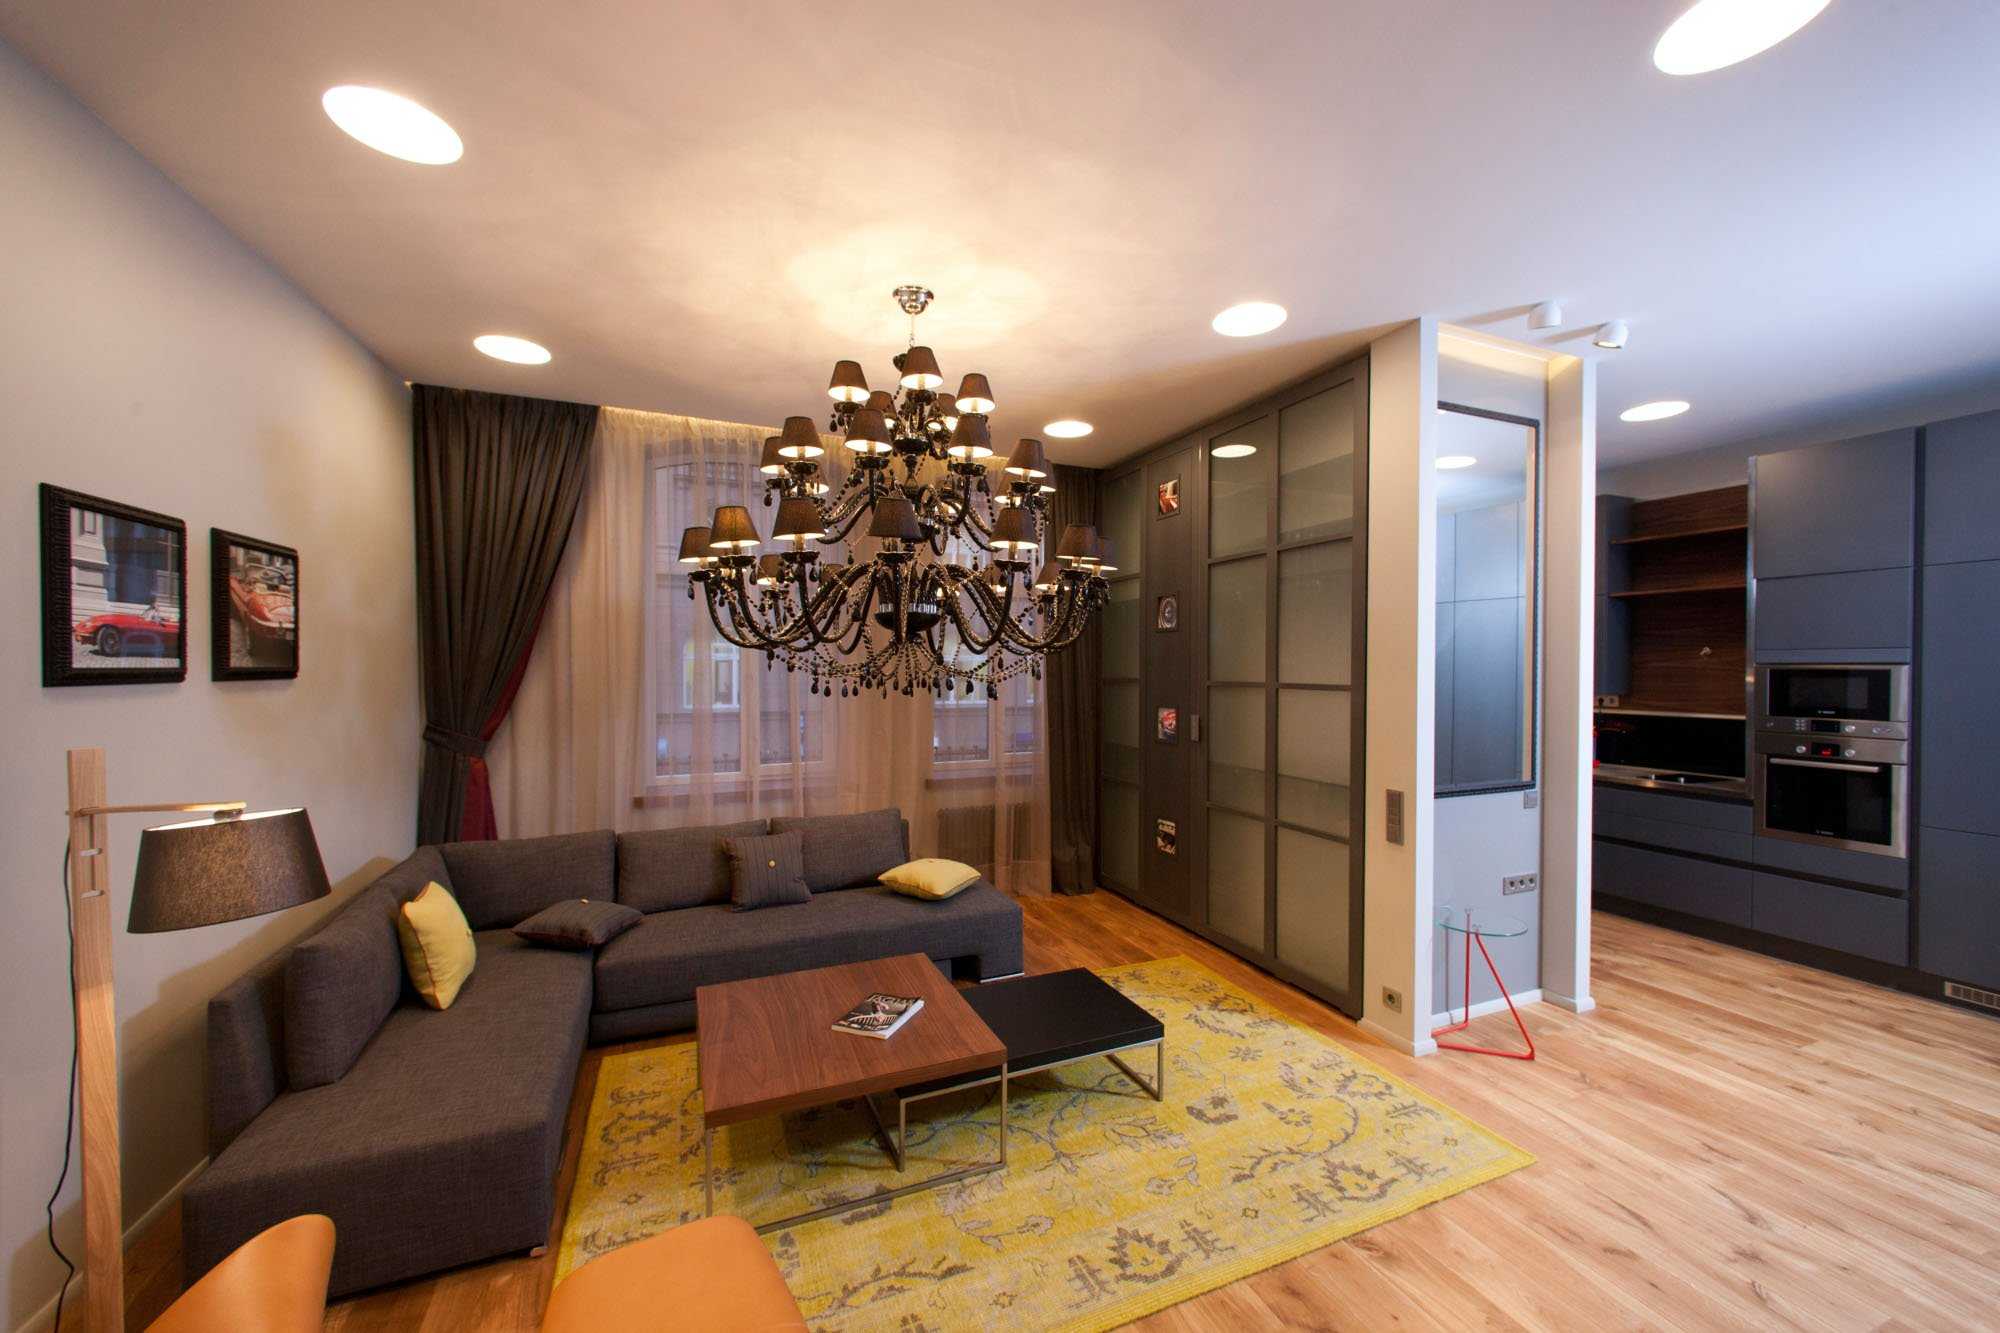 Дизайн двухкомнатной квартиры: перепланировка, зонирование и идеальный ремонт